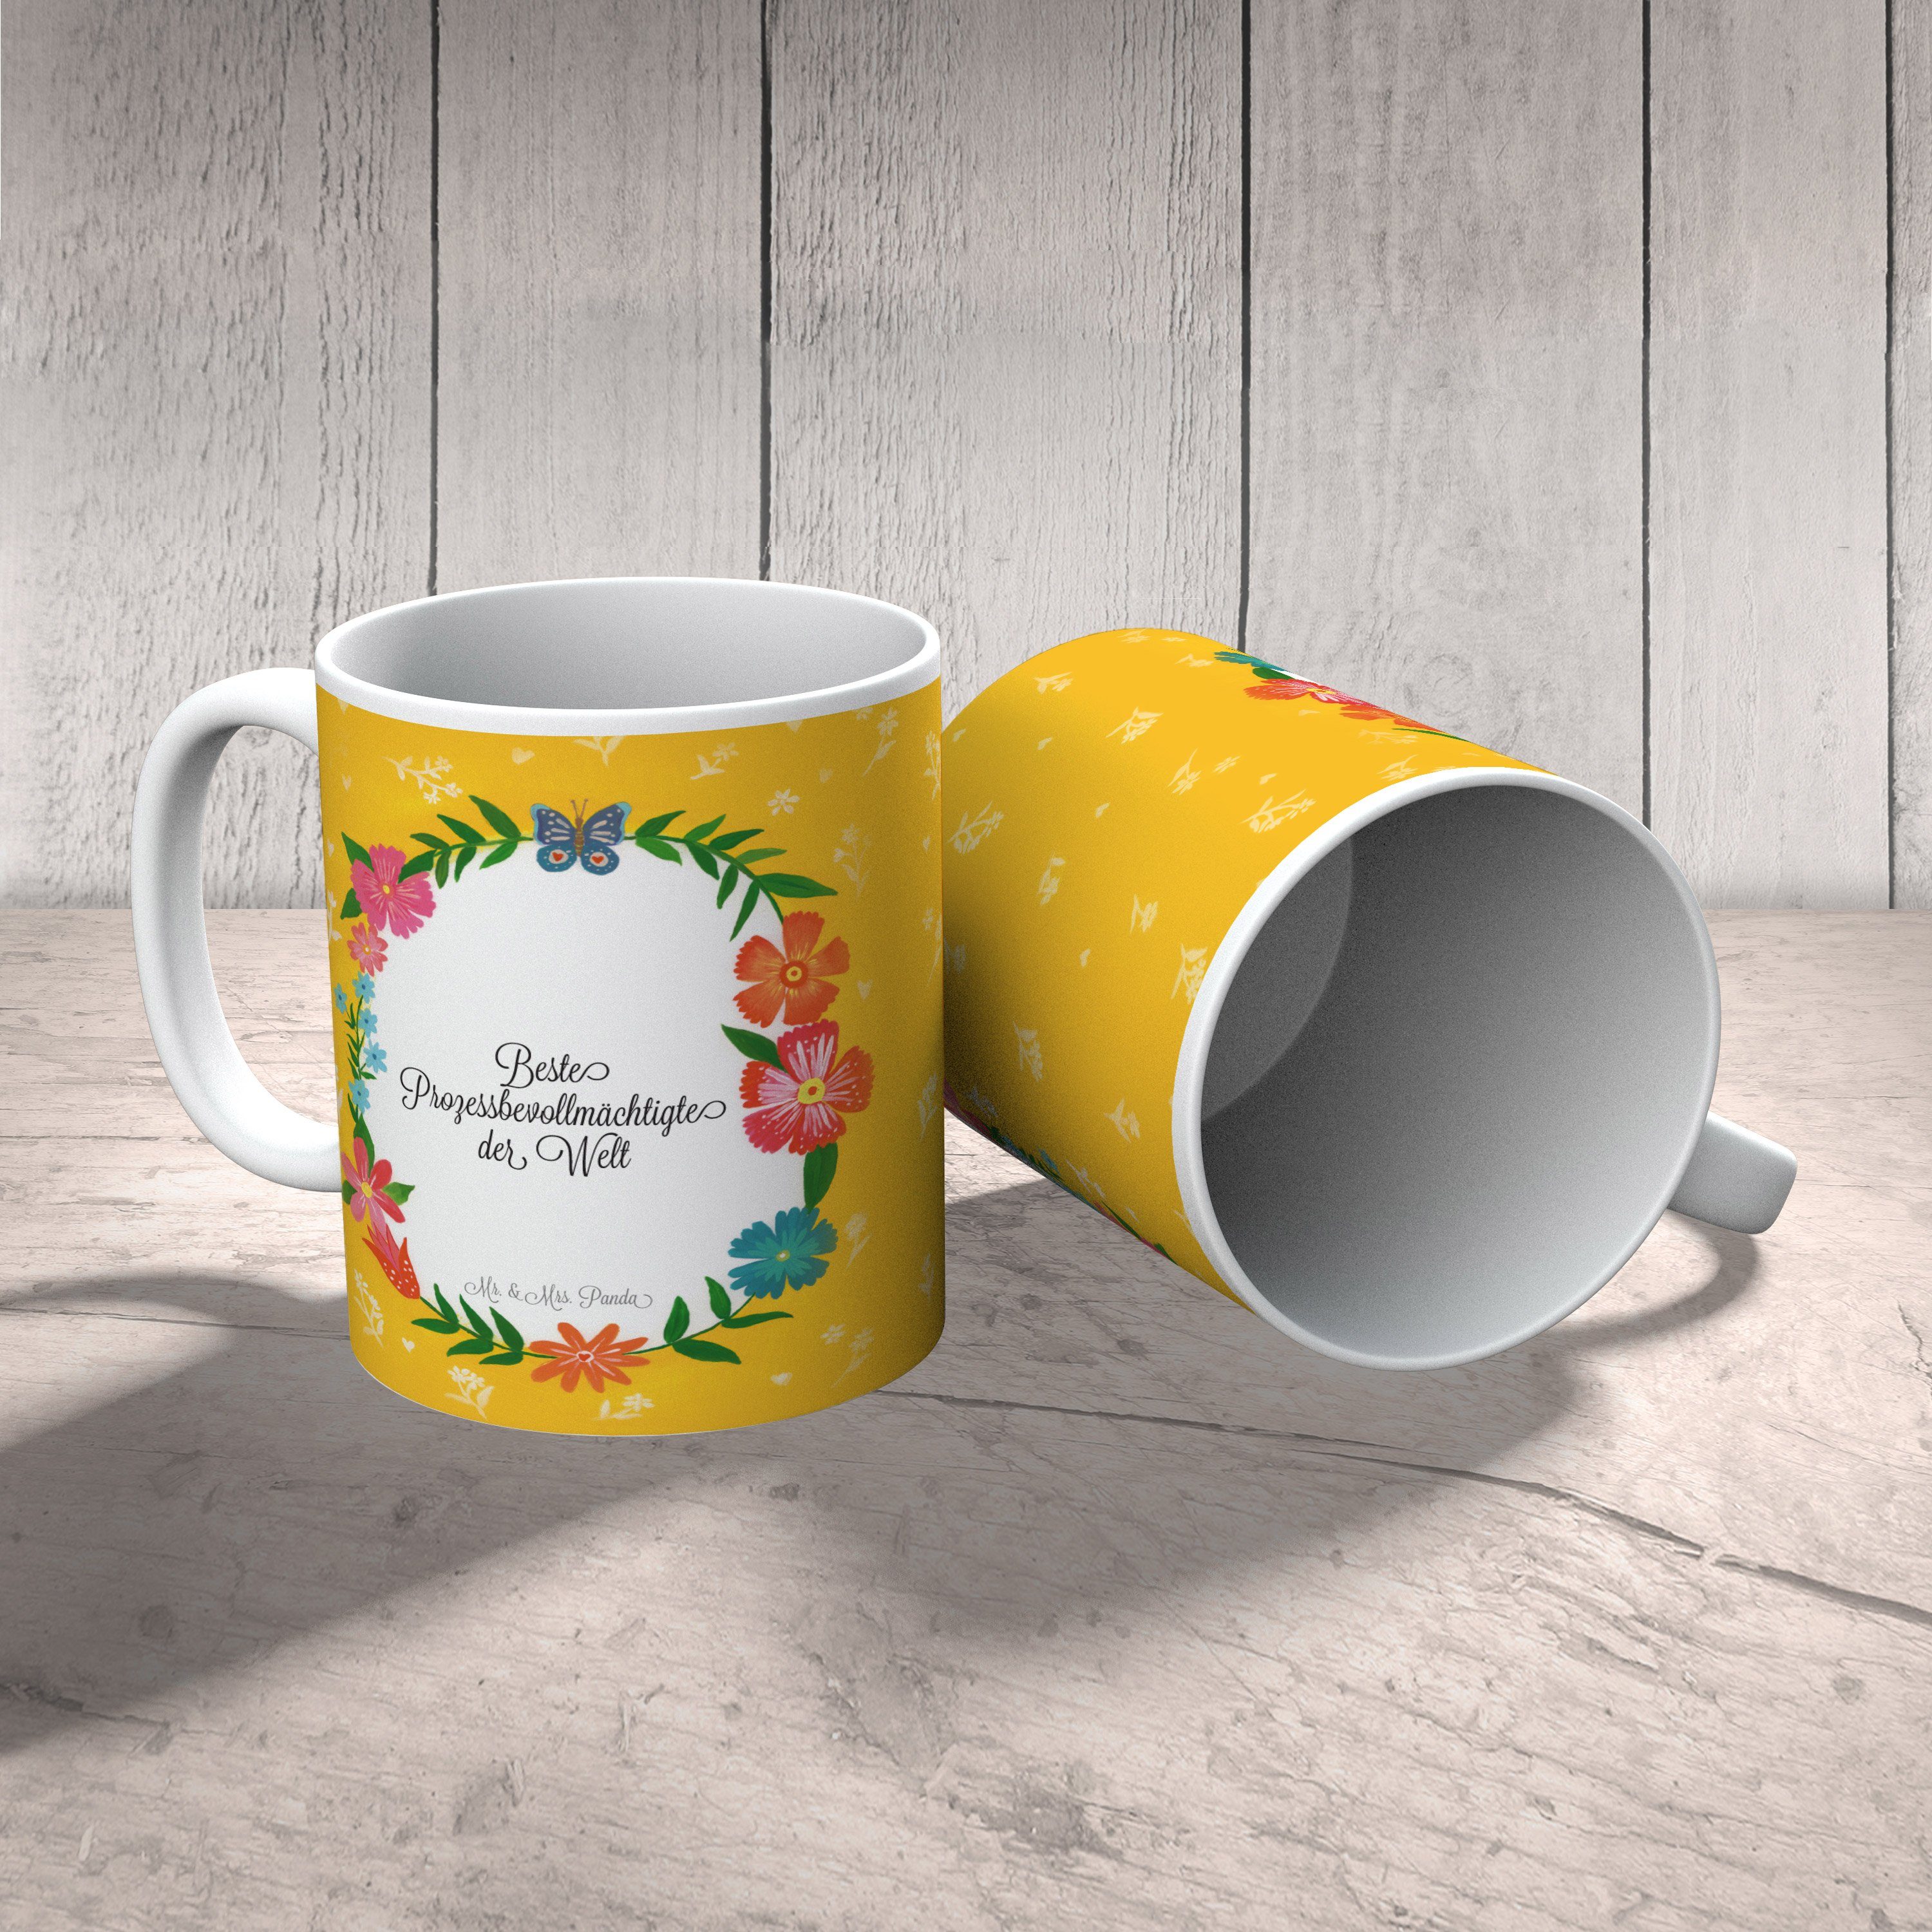 Mr. & Mrs. Panda Tasse Sprüche, Rente, Kaffeetasse, Geschenk, Tasse Prozessbevollmächtigte - Keramik